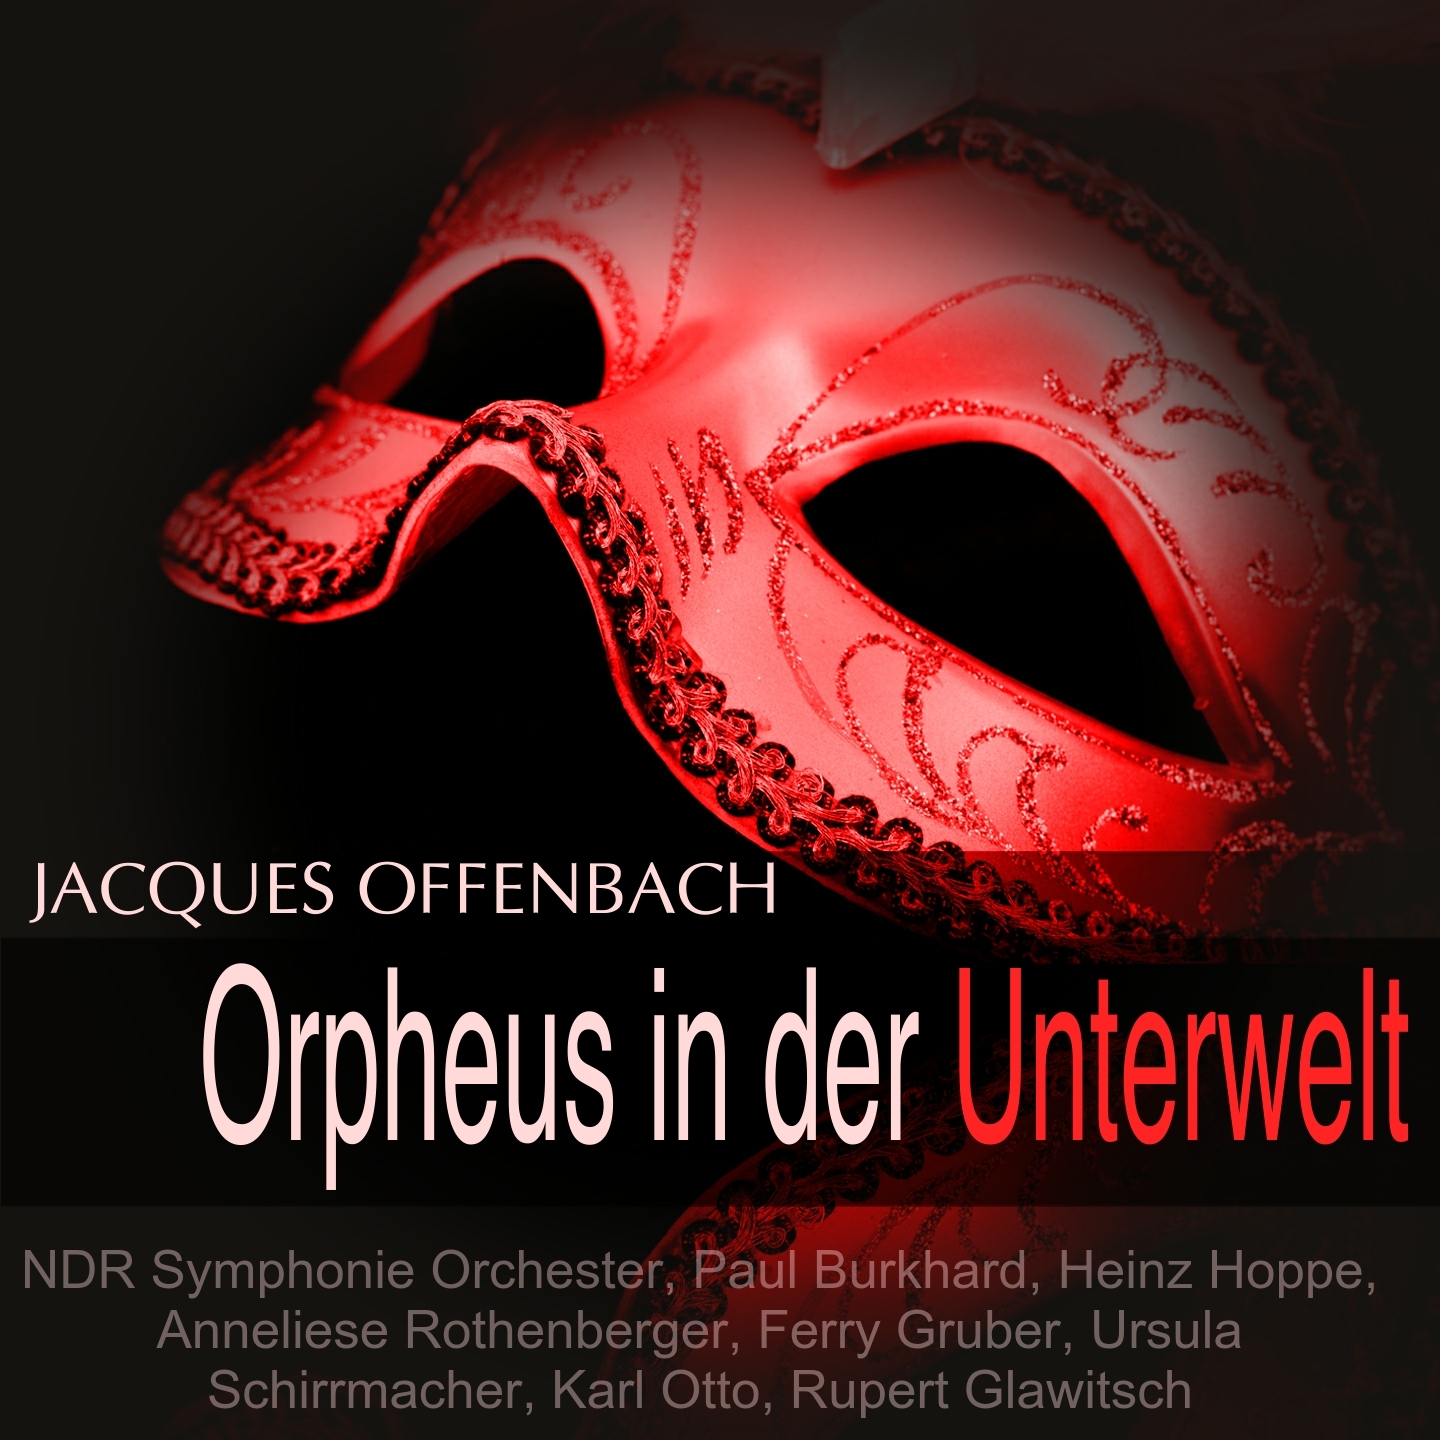 Orpheus in der Unterwelt: Dialog 10 (Chor)